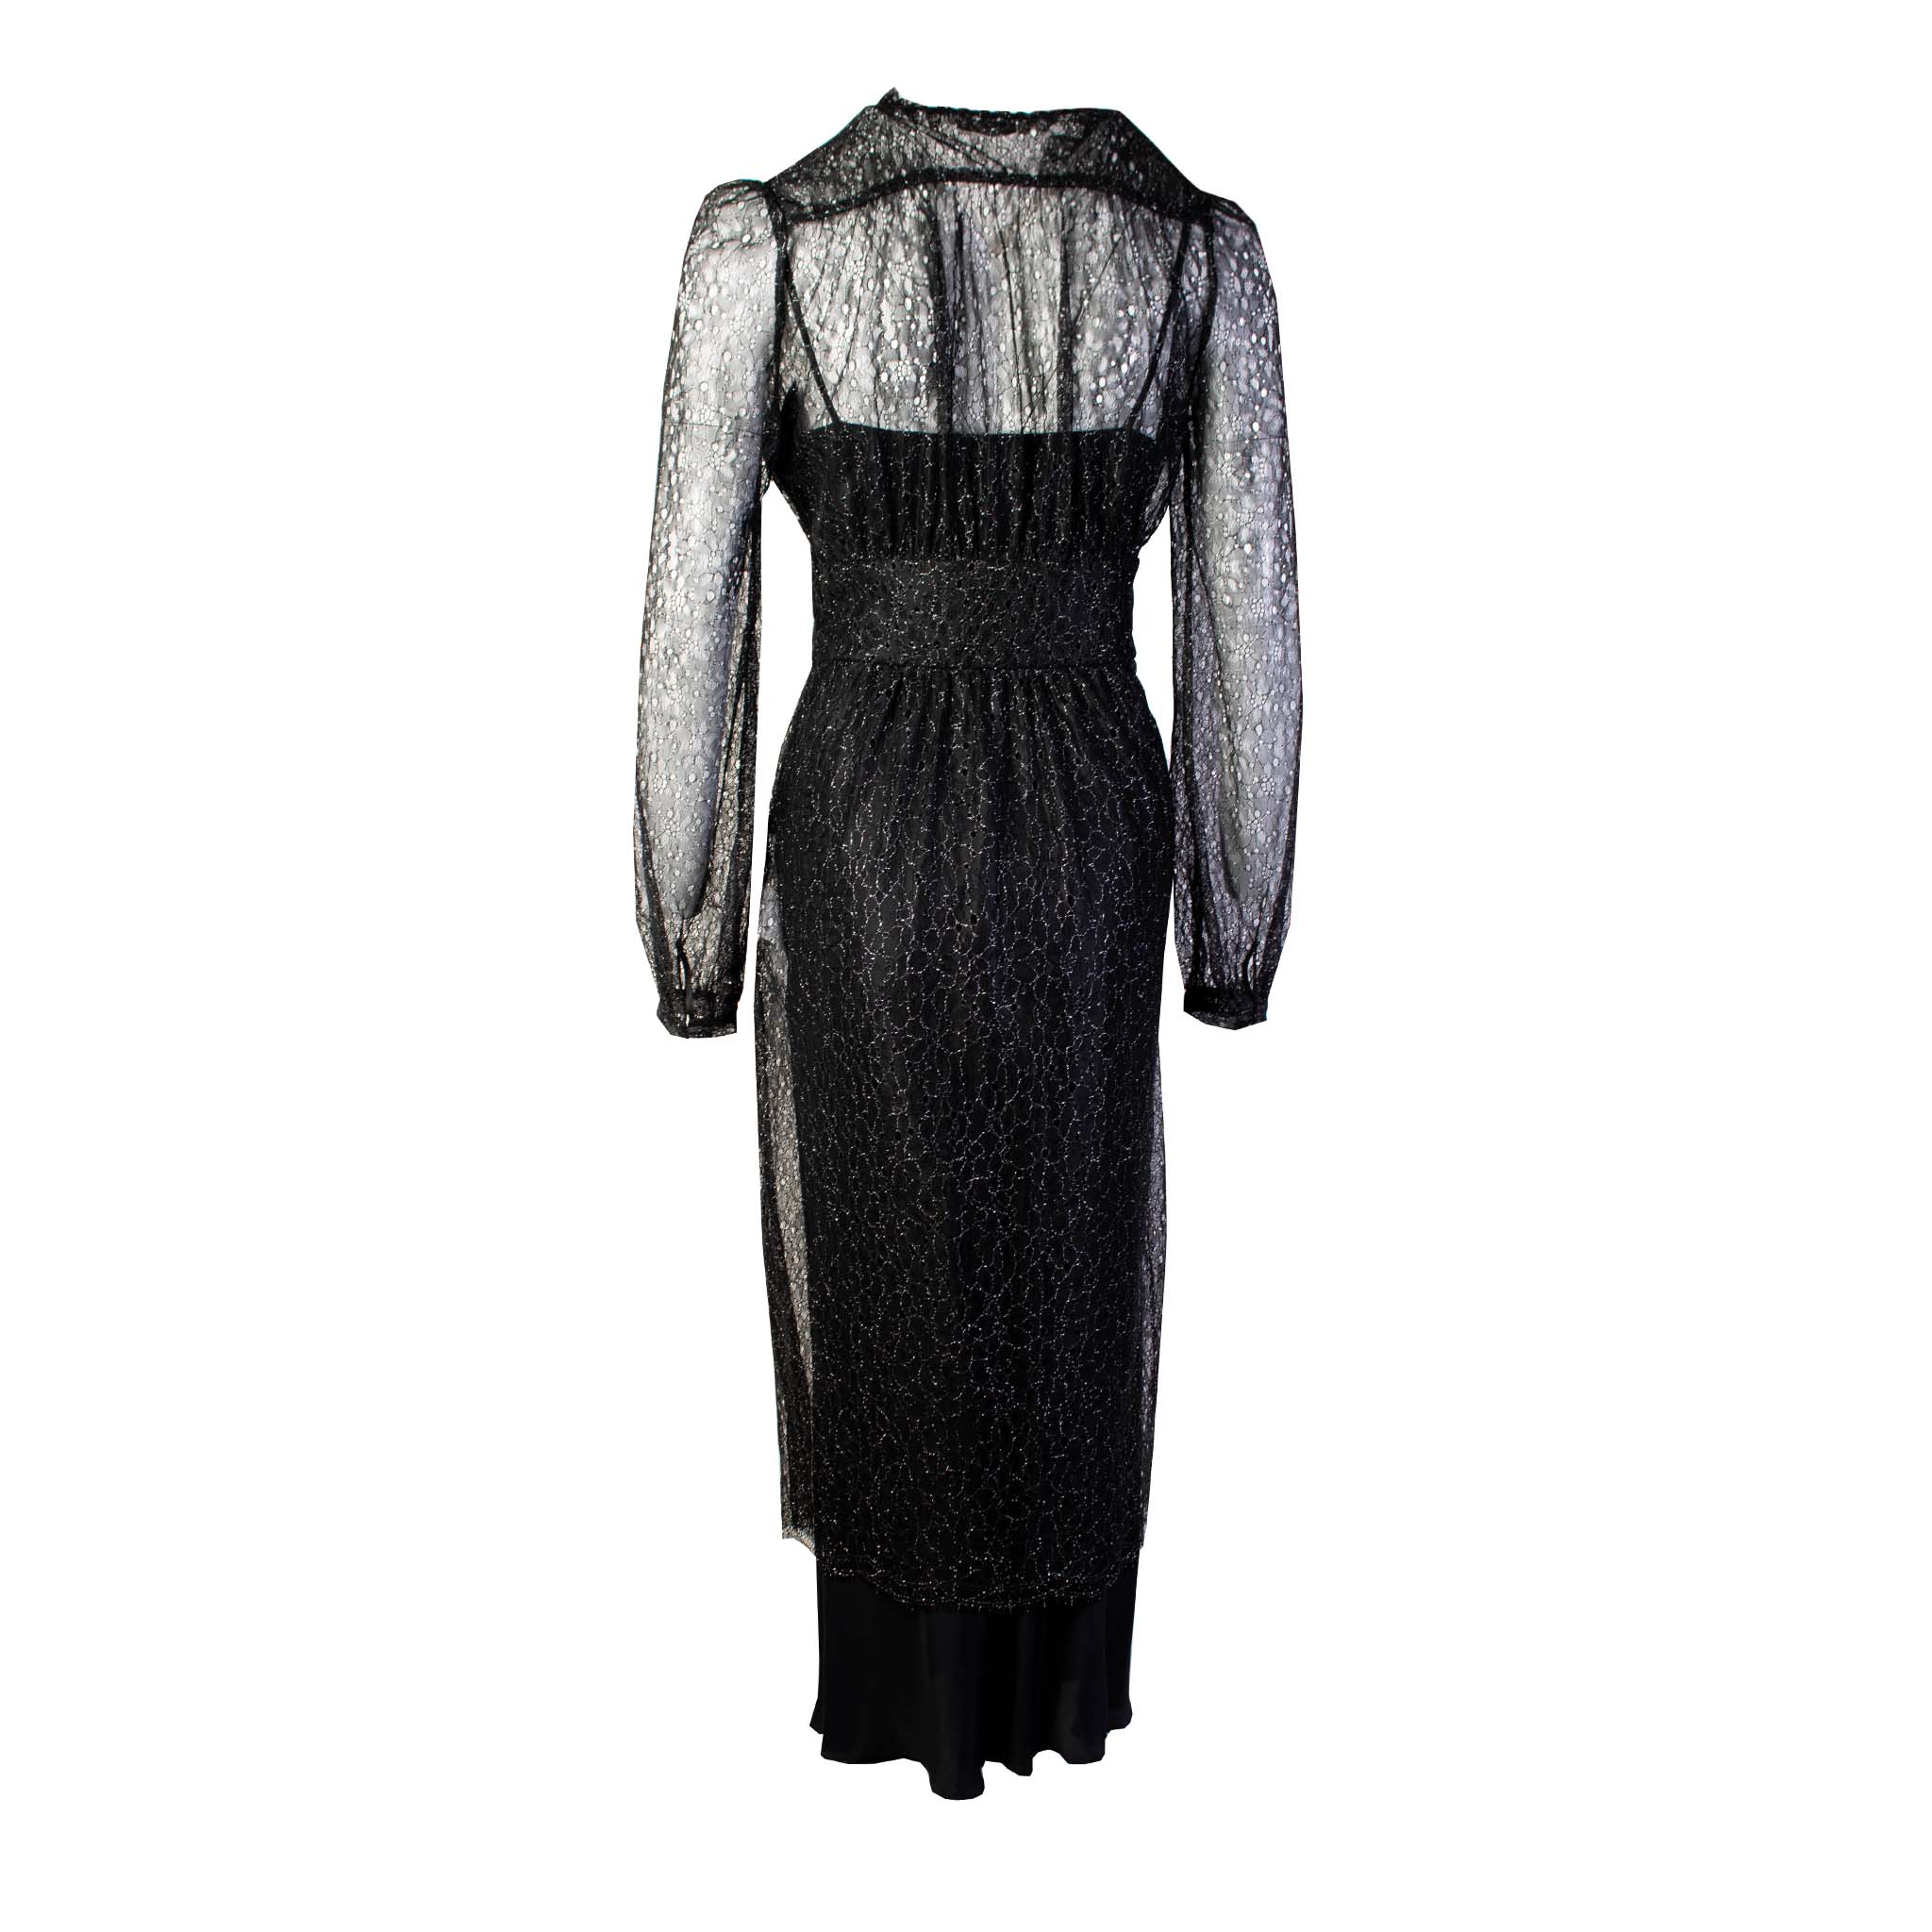 Lardini Black Long Embellished Dress with petticoat - Fizigo